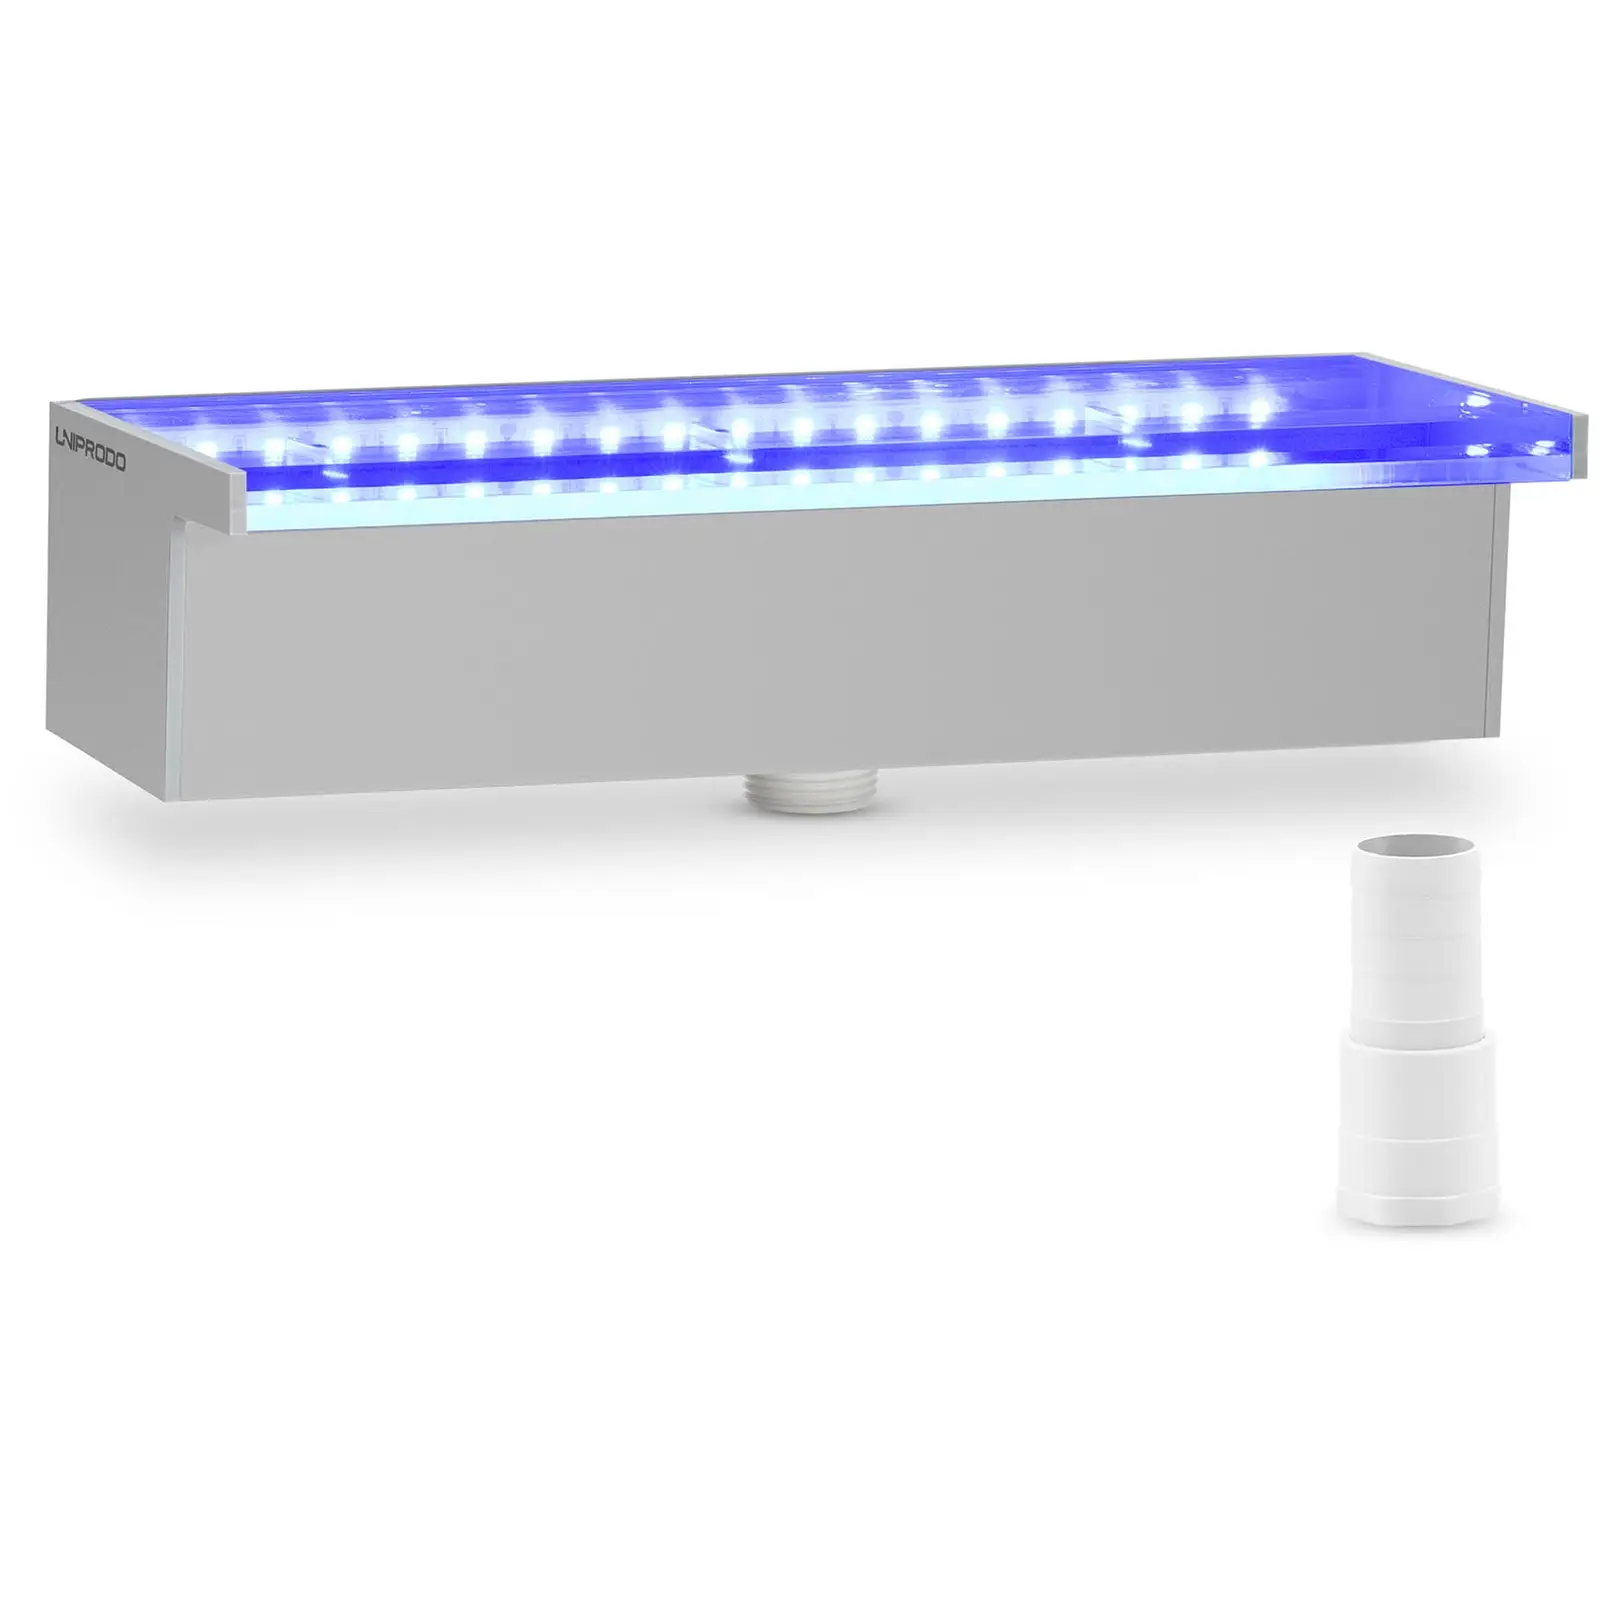 Schwalldusche - 30 cm - LED-Beleuchtung - Blau / Weiß - 30 mm Wasserauslauf